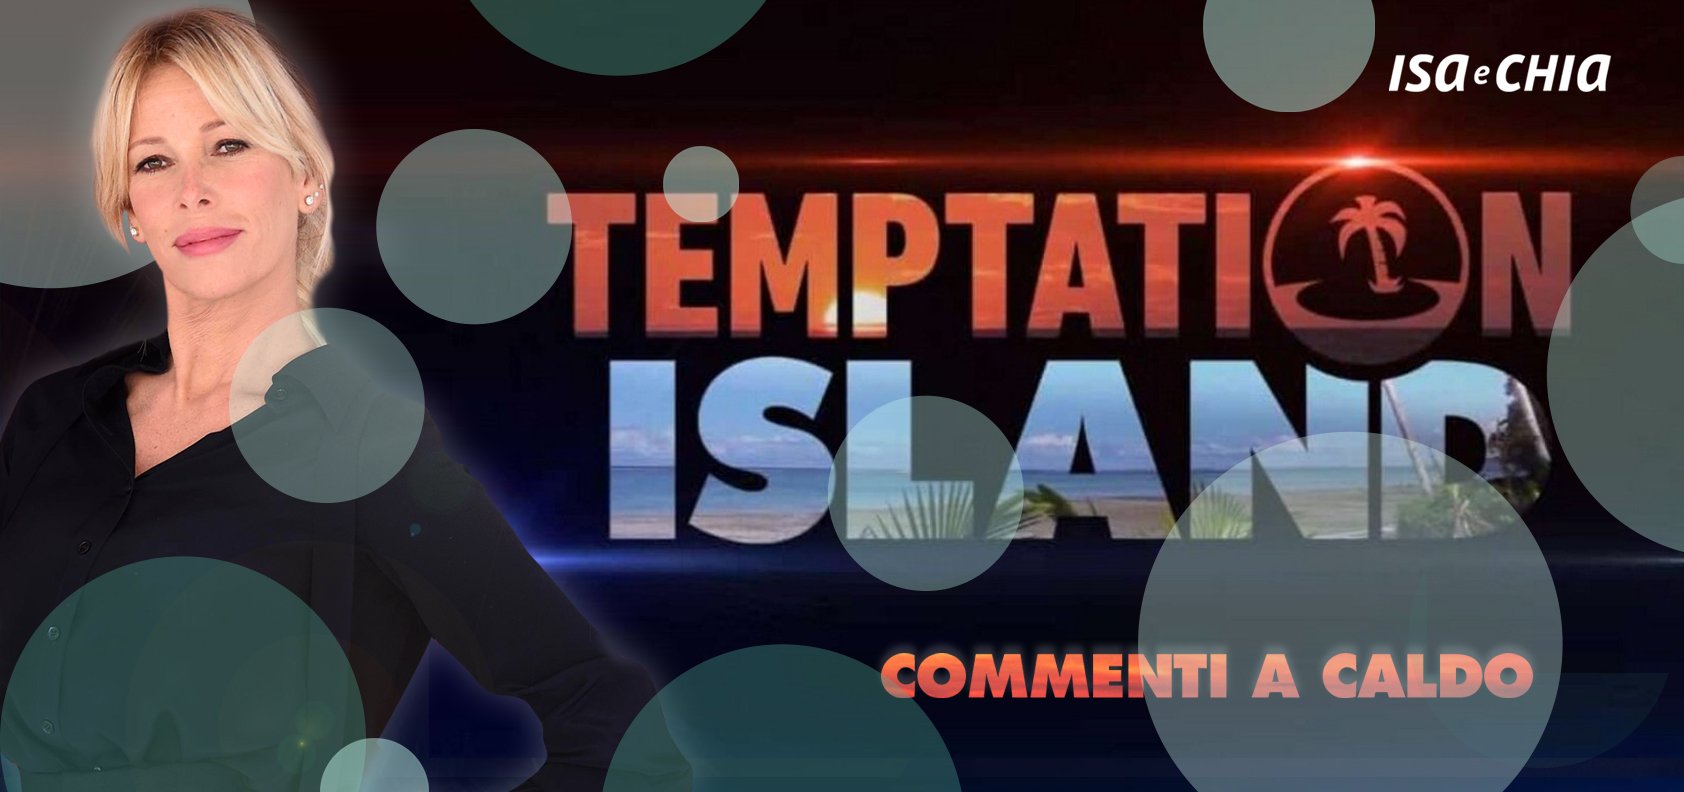 ‘Temptation Island 8’, prima puntata: commenti a caldo